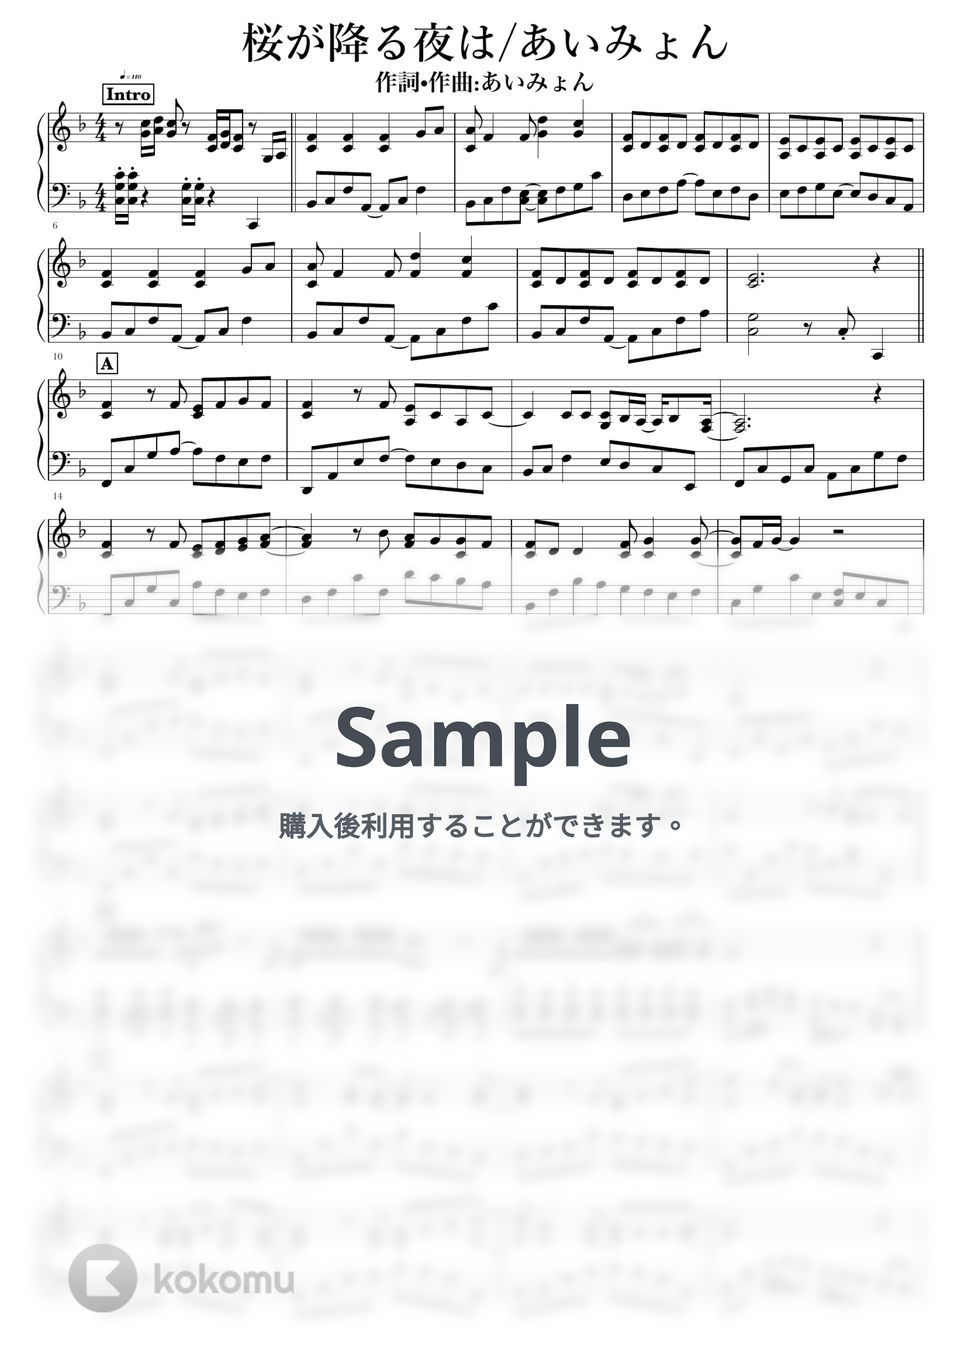 あいみょん - 桜が降る夜は by NOTES music